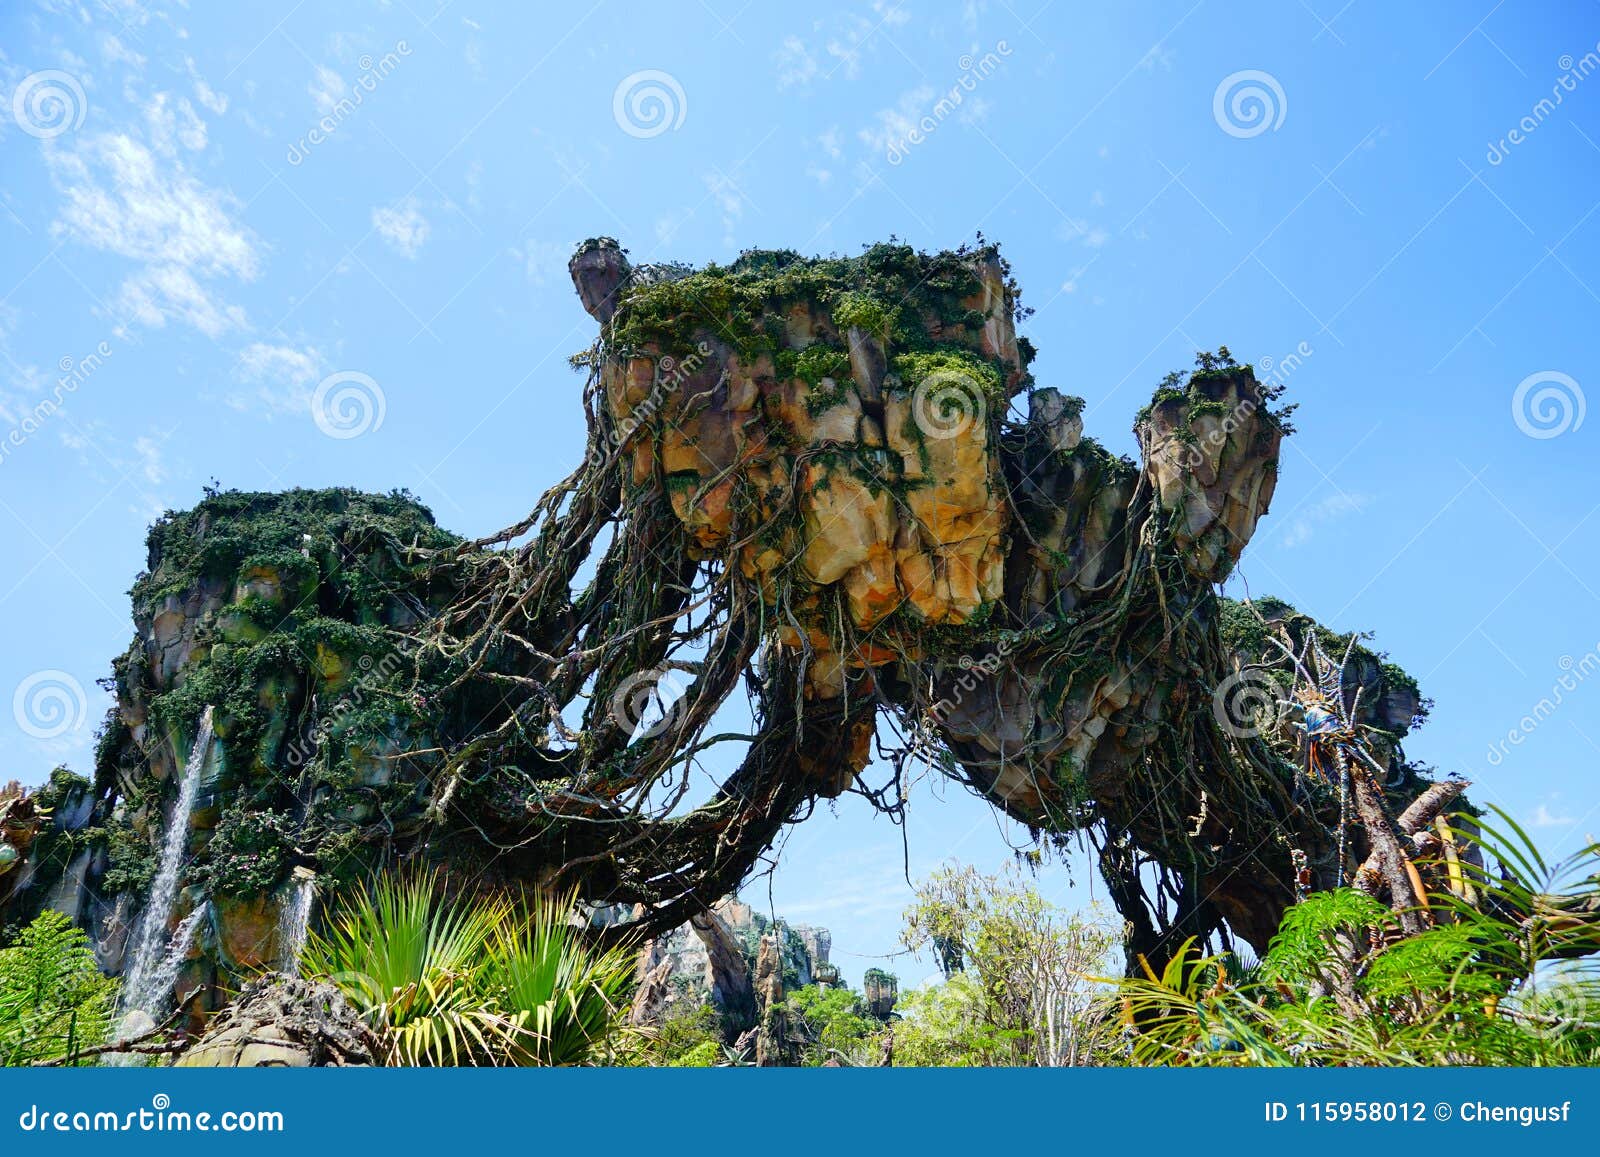 First look inside Disneys Avatar  World of Pandora  CNN